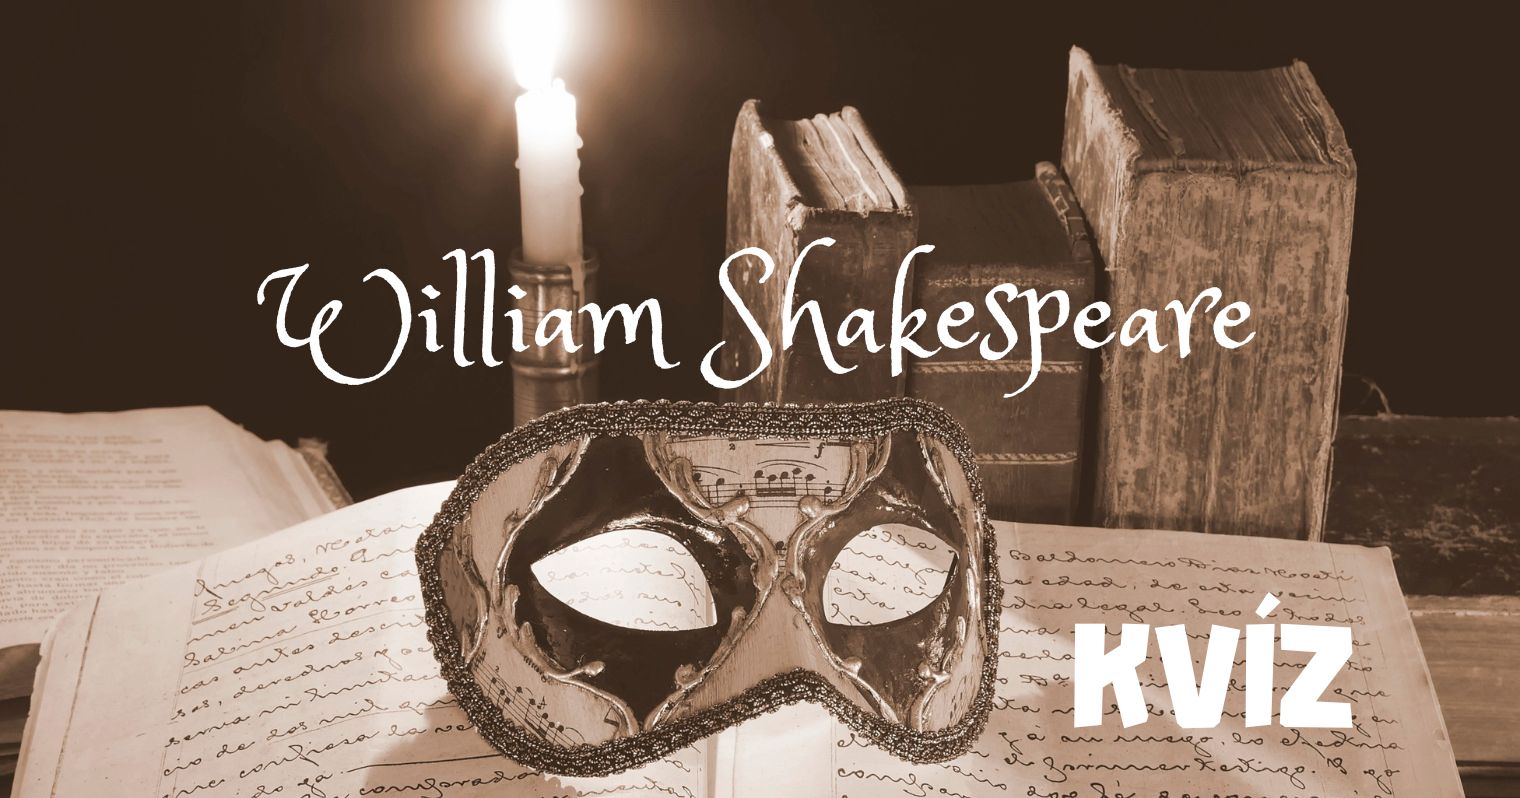 Egy gyertya fényénél egy nyitott, teleírt régi könyvön van egy színházi álarc, a képen a felirat "William Shakespeare" és "KVÍZ".